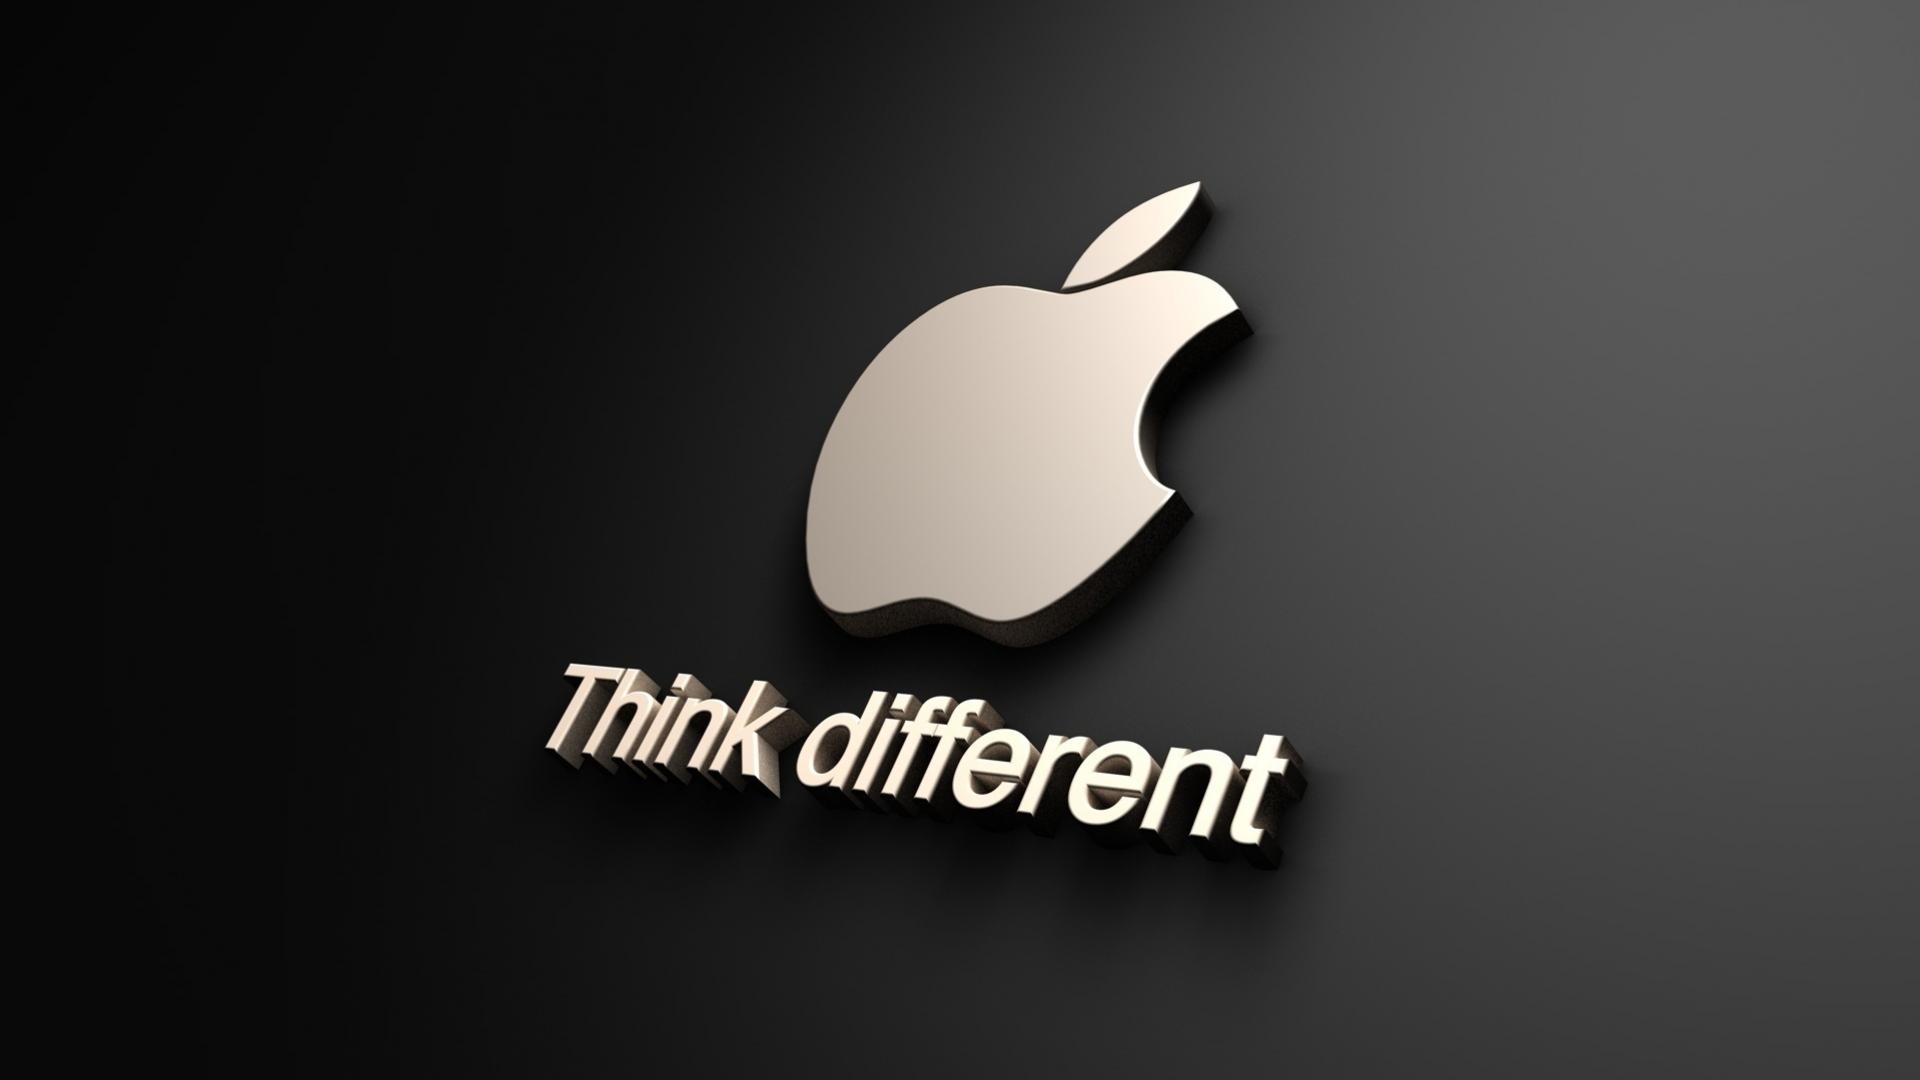 How apple built their brand